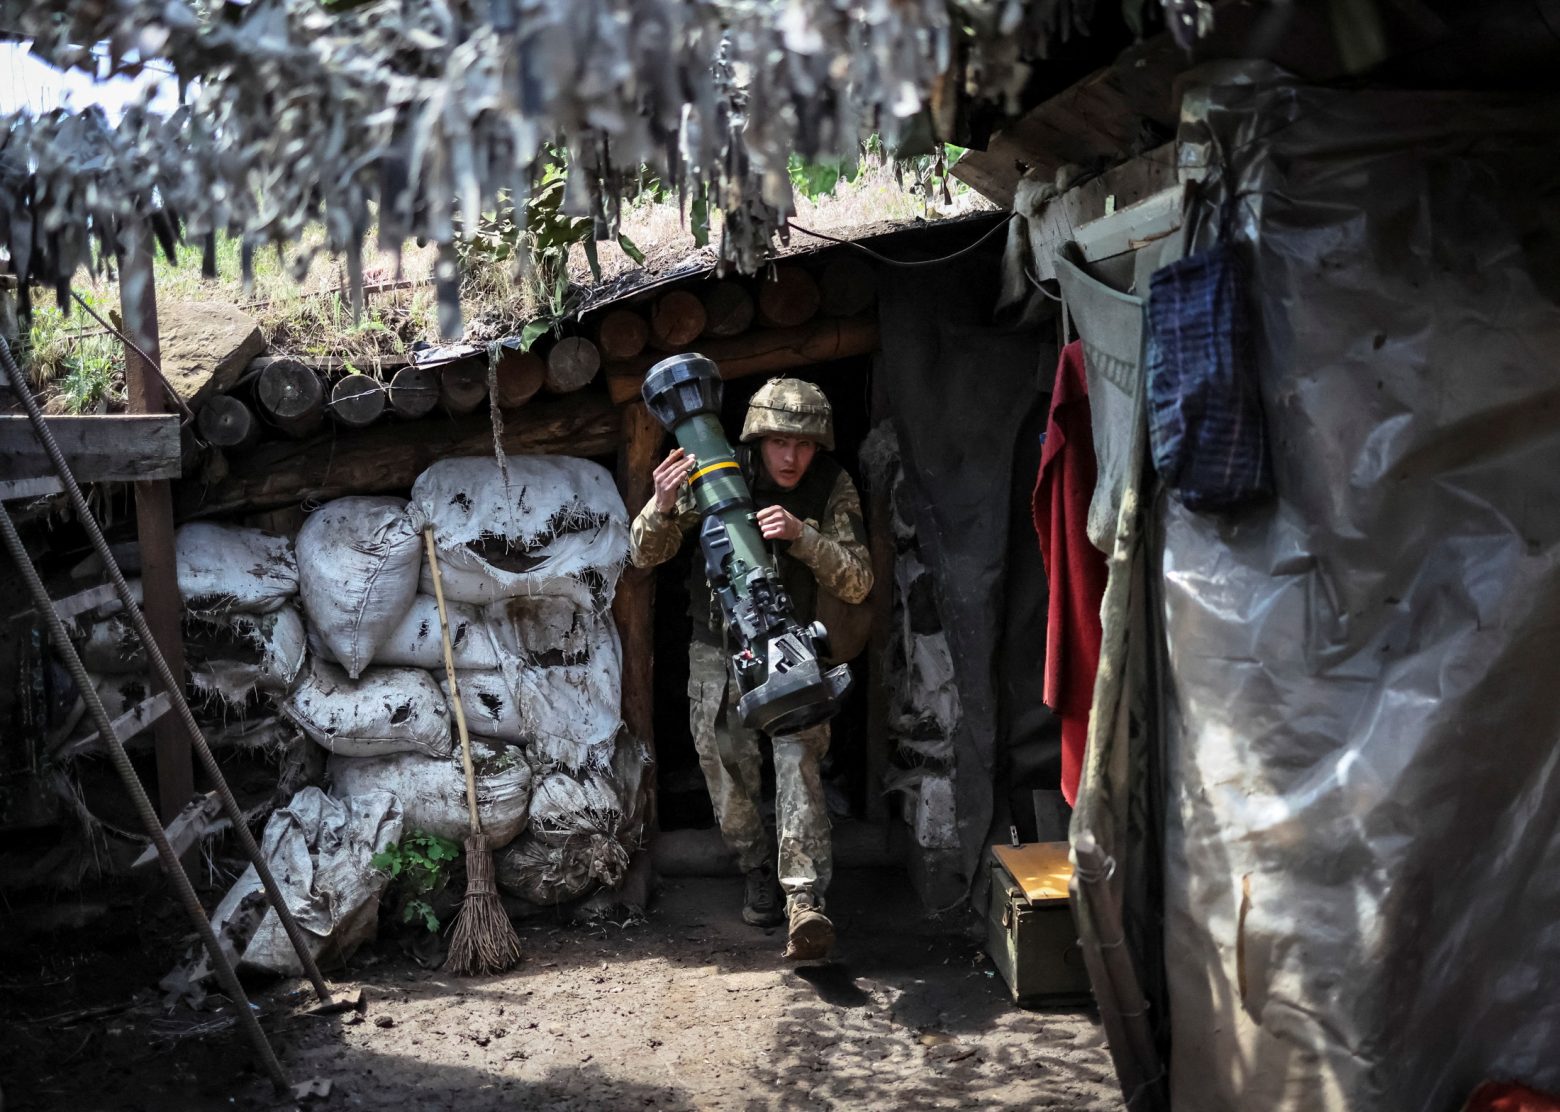 Ουκρανία: Οι σοβαρές απώλειες και η έλλειψη πυρομαχικών μπορεί να καθορίσουν την πορεία του πολέμου